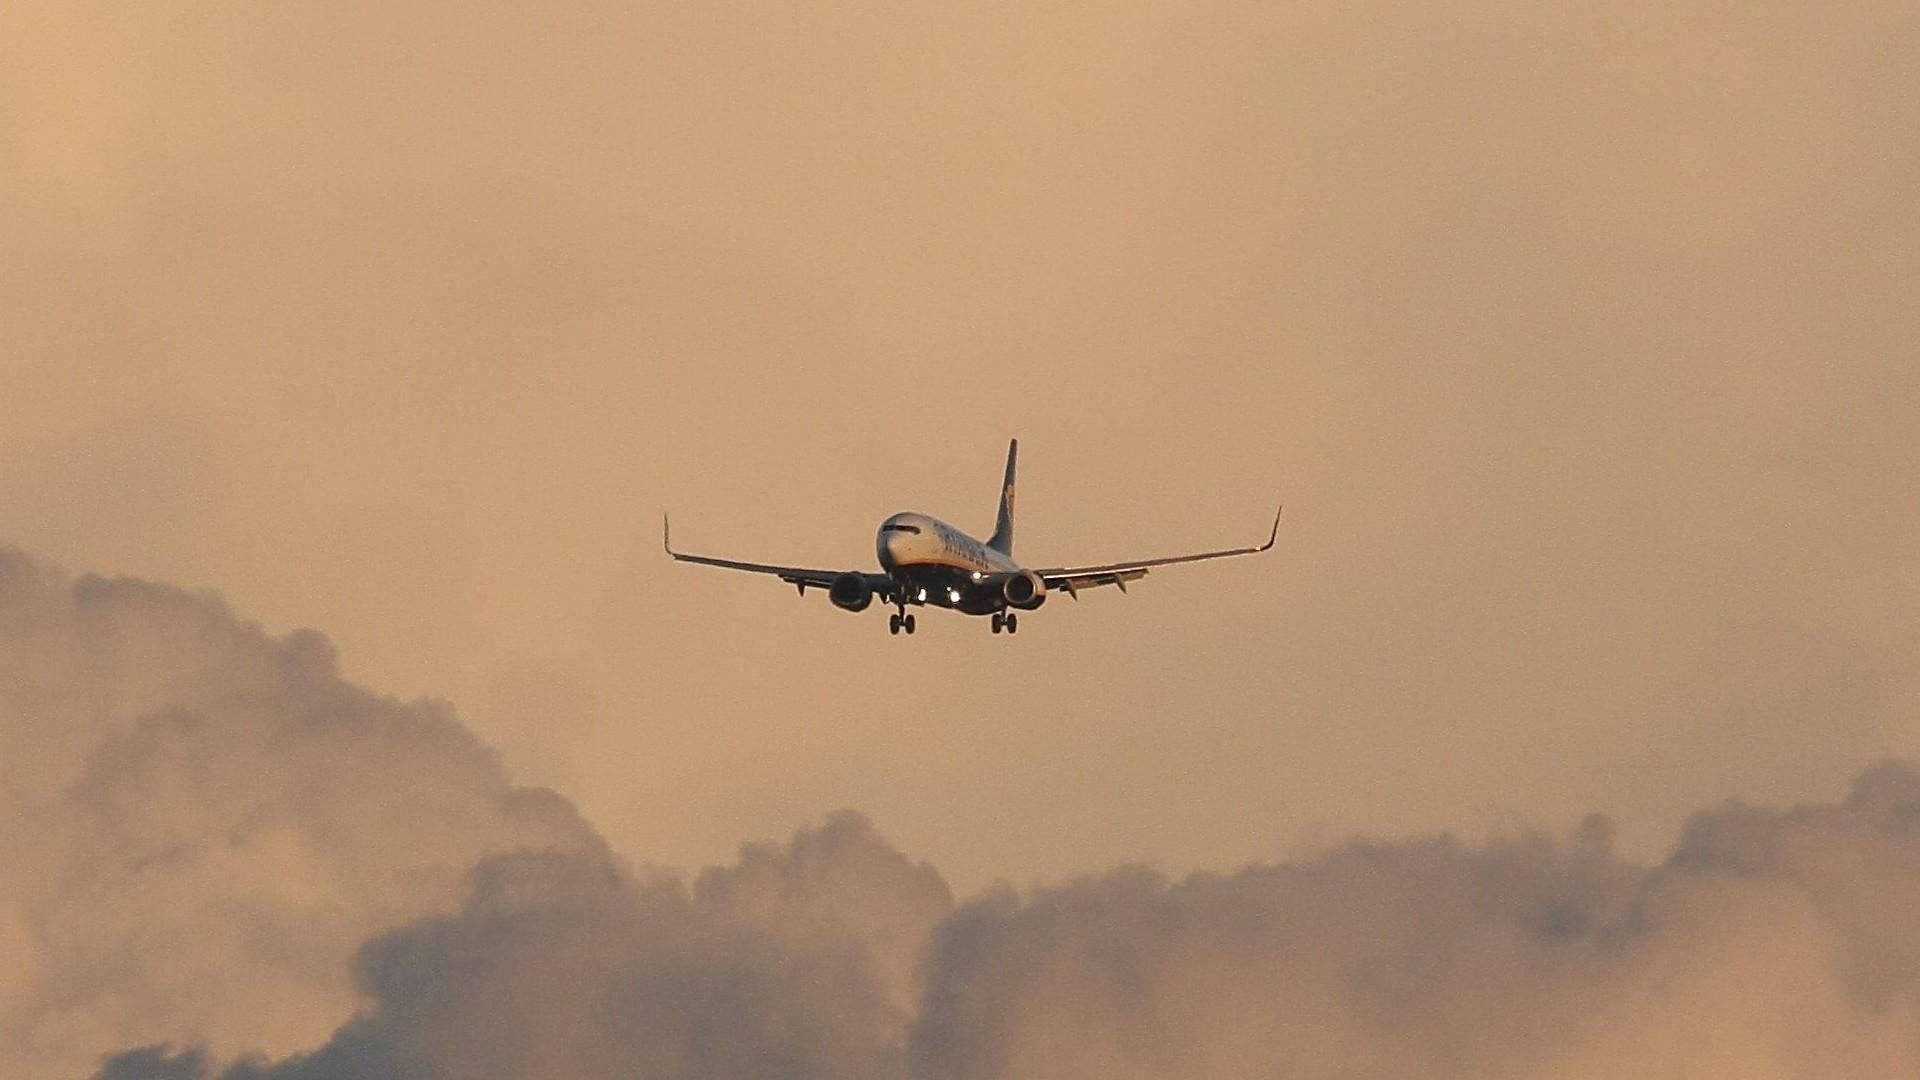 Ryanairflygplan Över Molnig Orange Himmel. Wallpaper